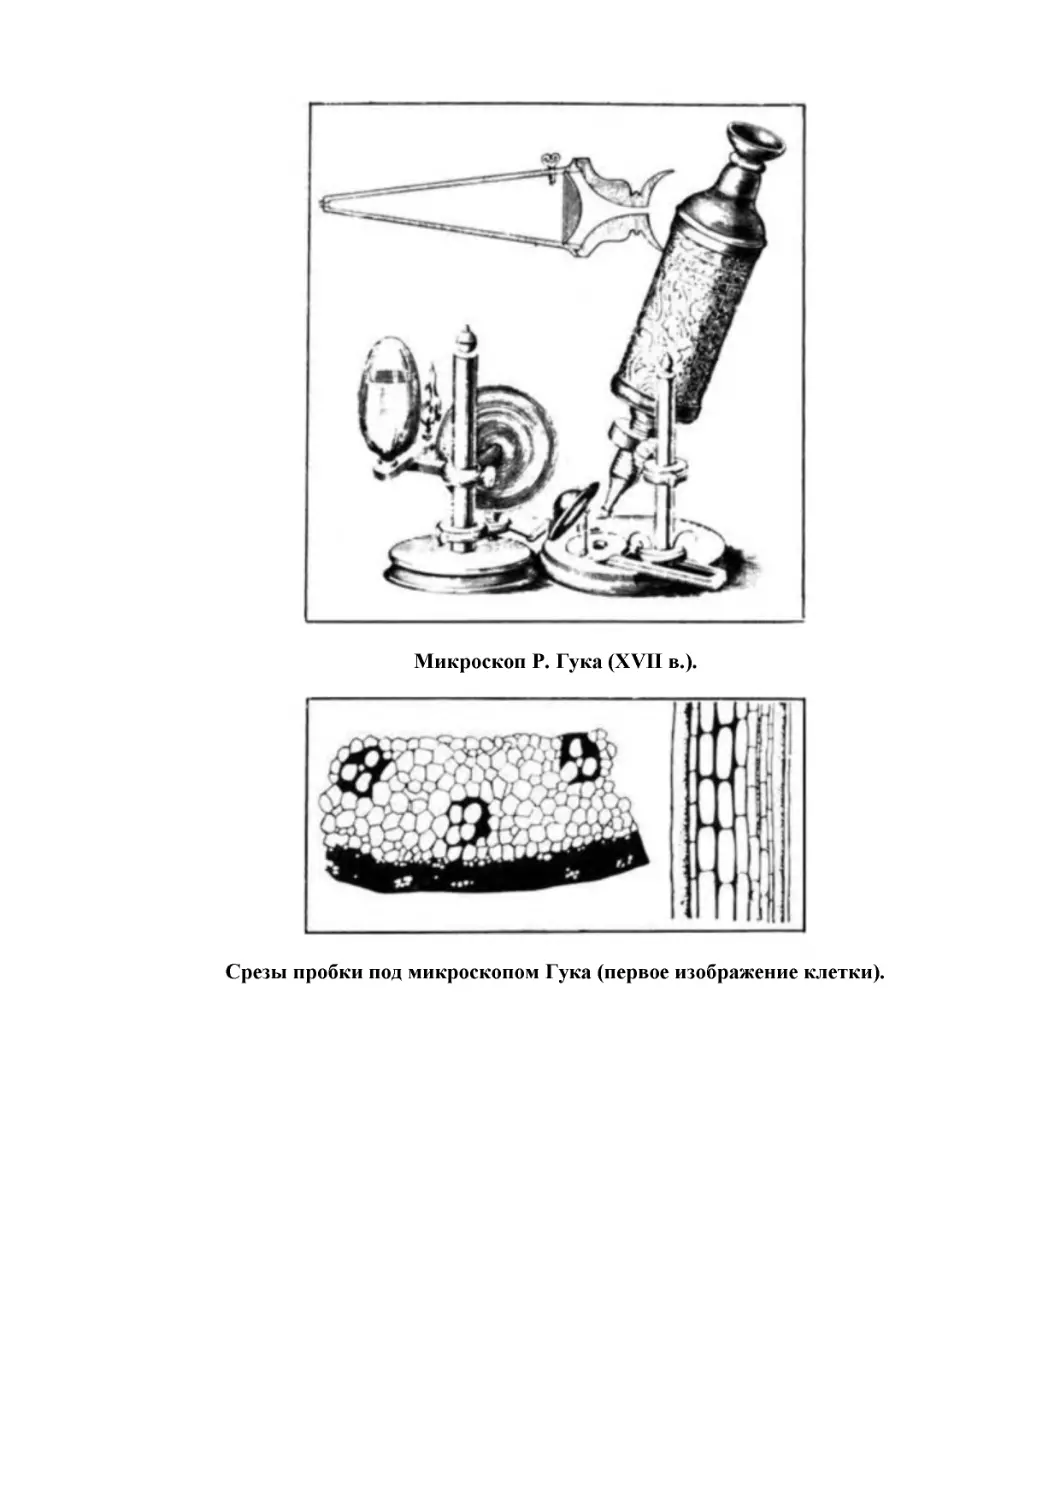 Микроскоп Р. Гука (XVII в.).
Срезы пробки под микроскопом Гука (первое изображение клетки).